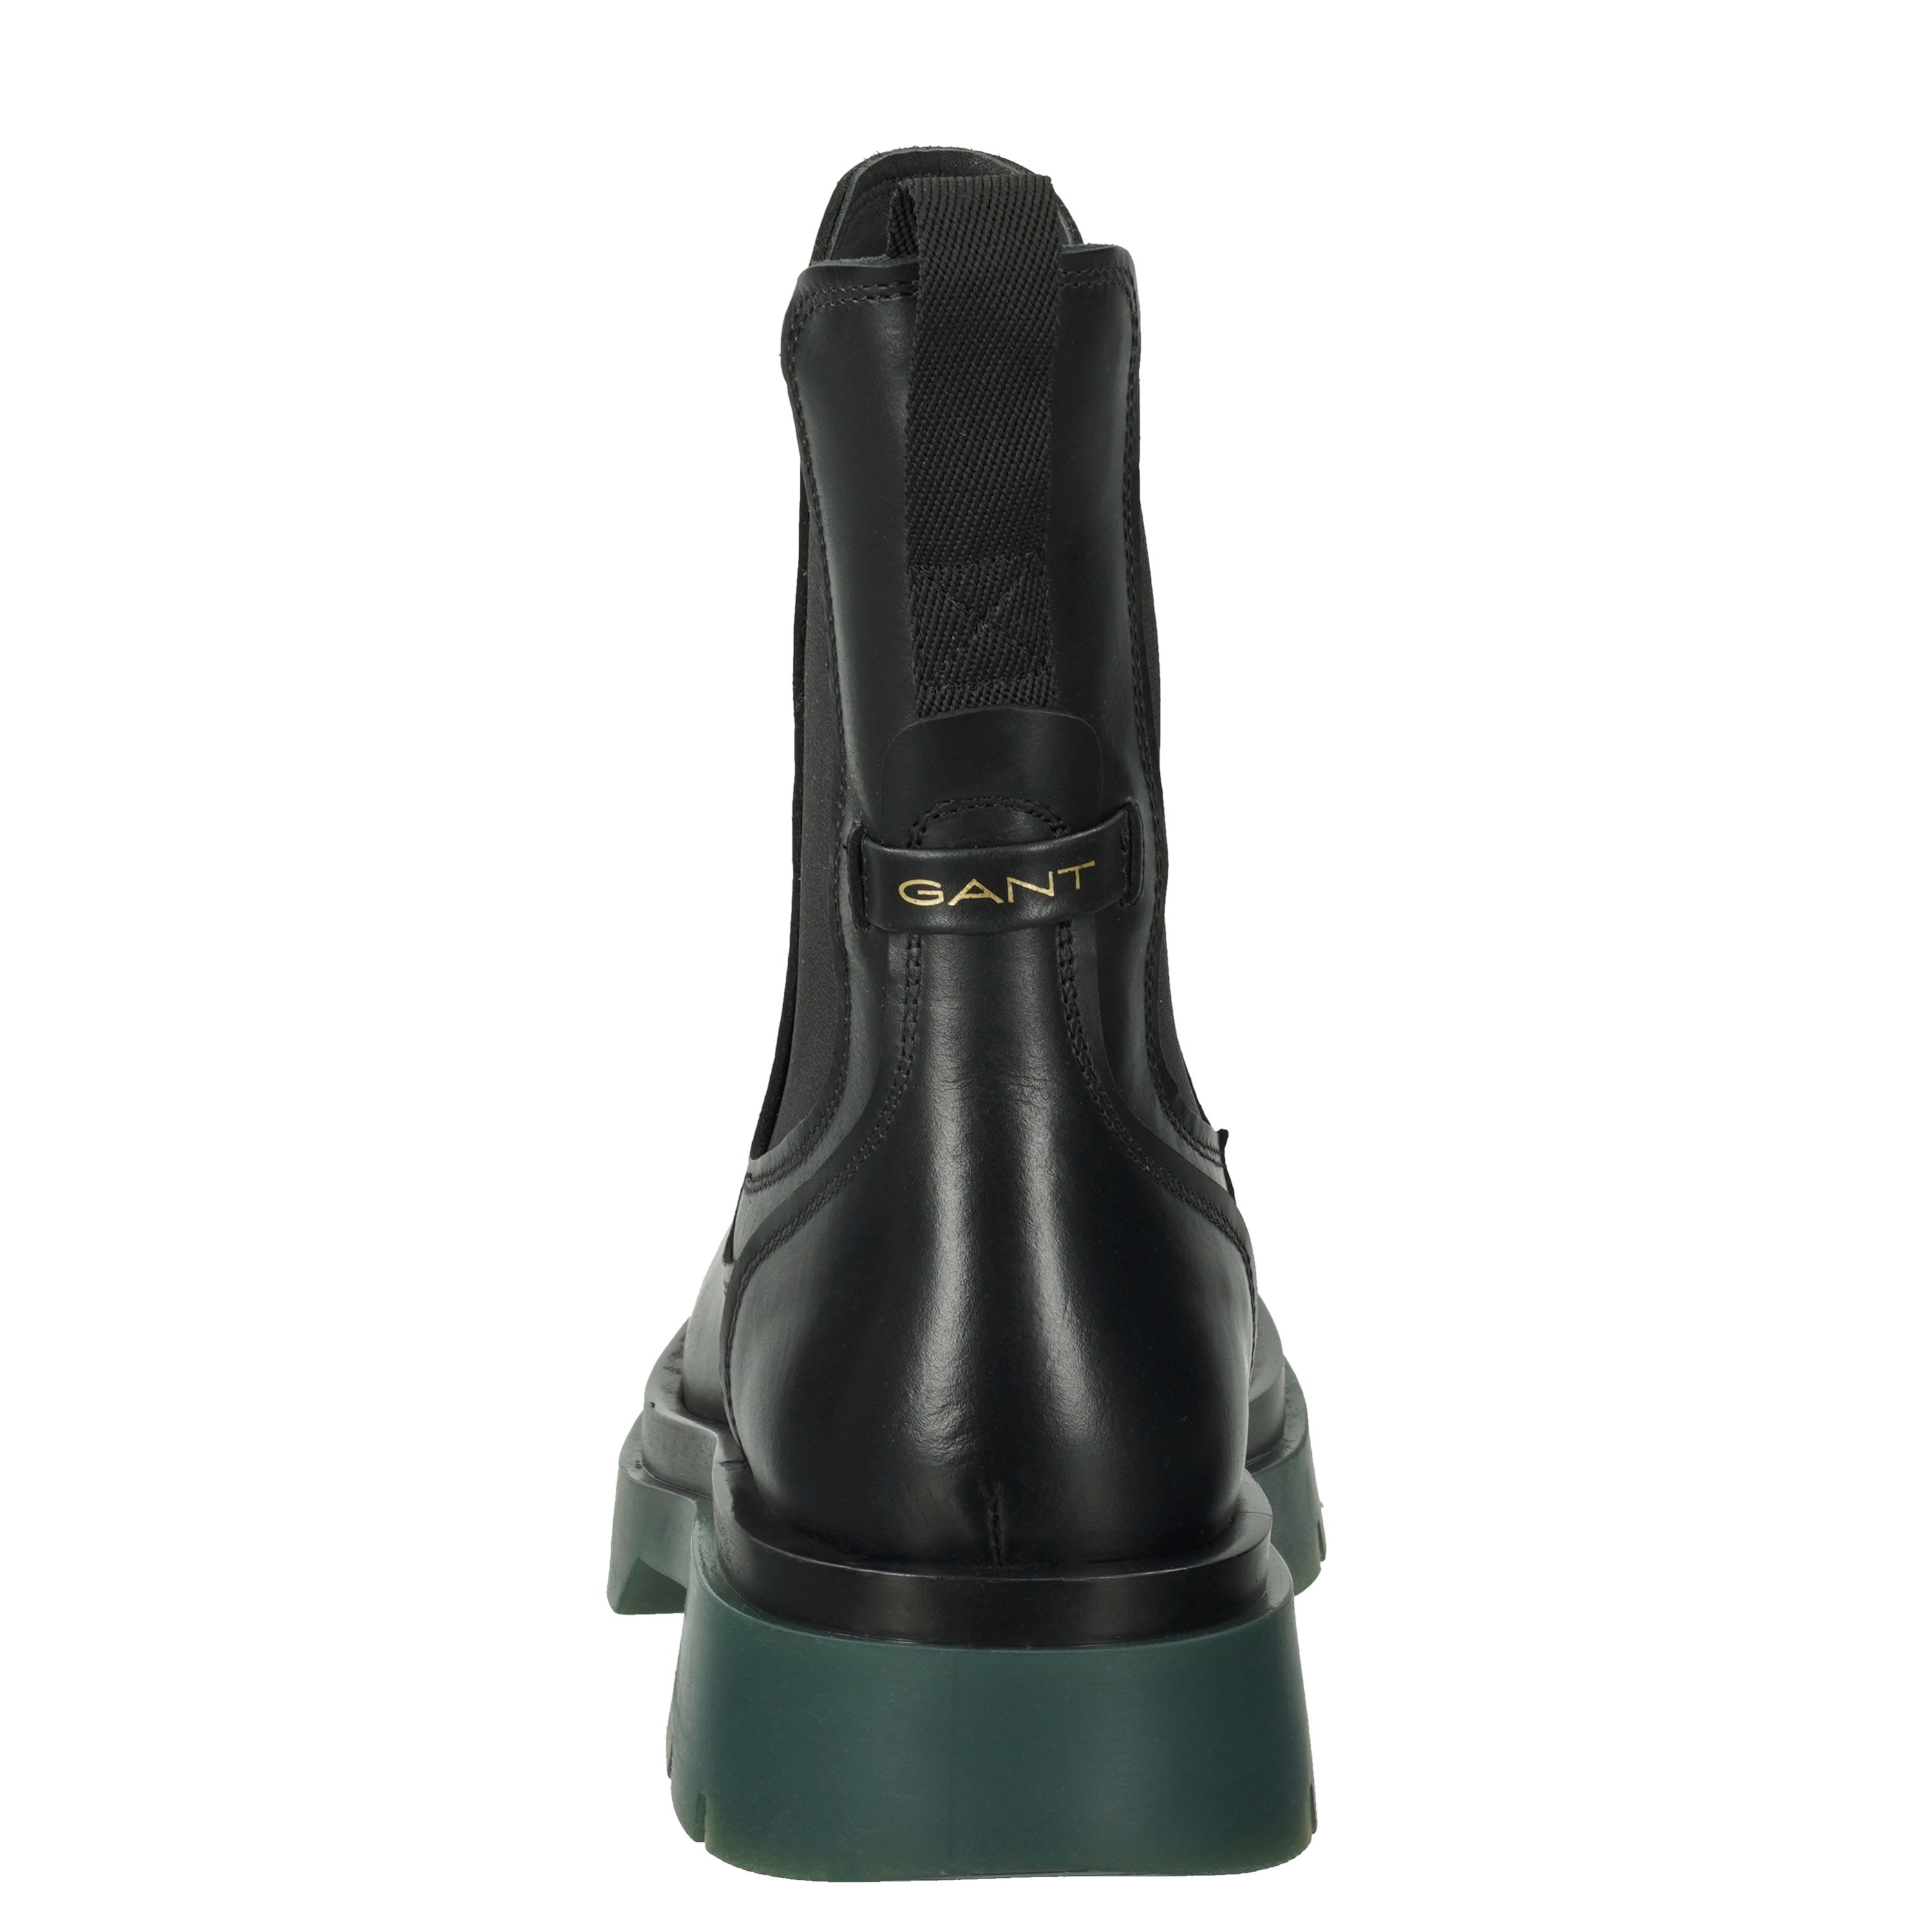 Meghany Chelsea Boot, g002 - black/green